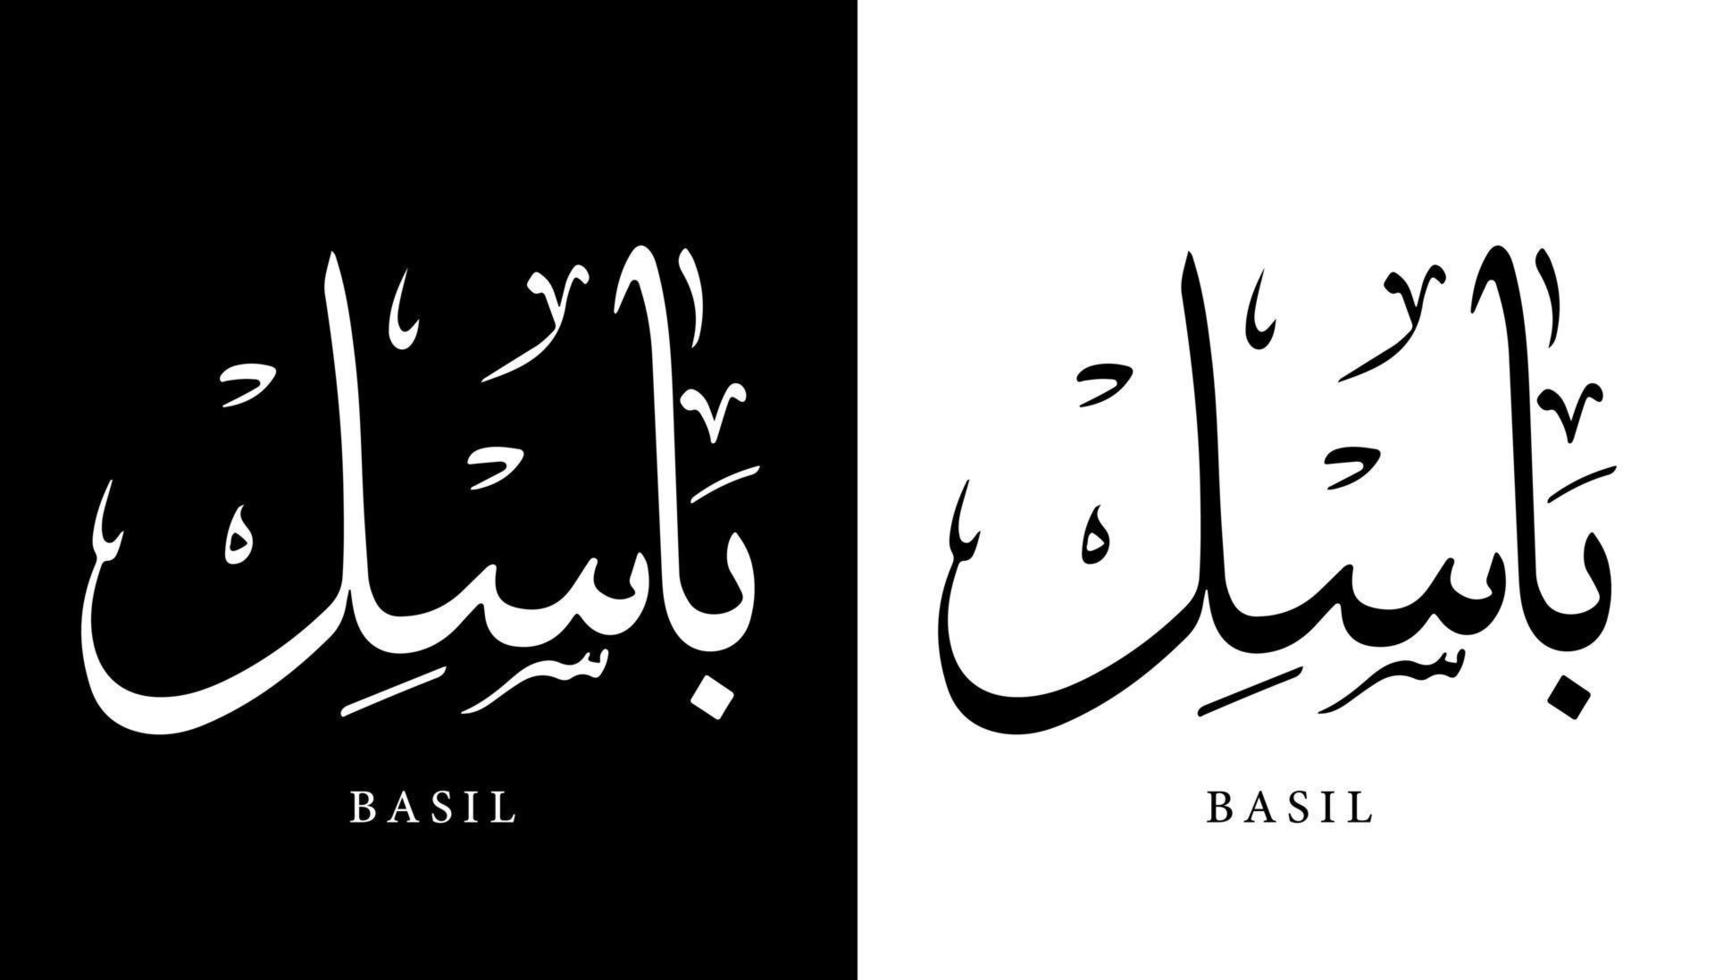 nombre de caligrafía árabe traducido 'albahaca' letras árabes alfabeto fuente letras islámicas logo vector ilustración